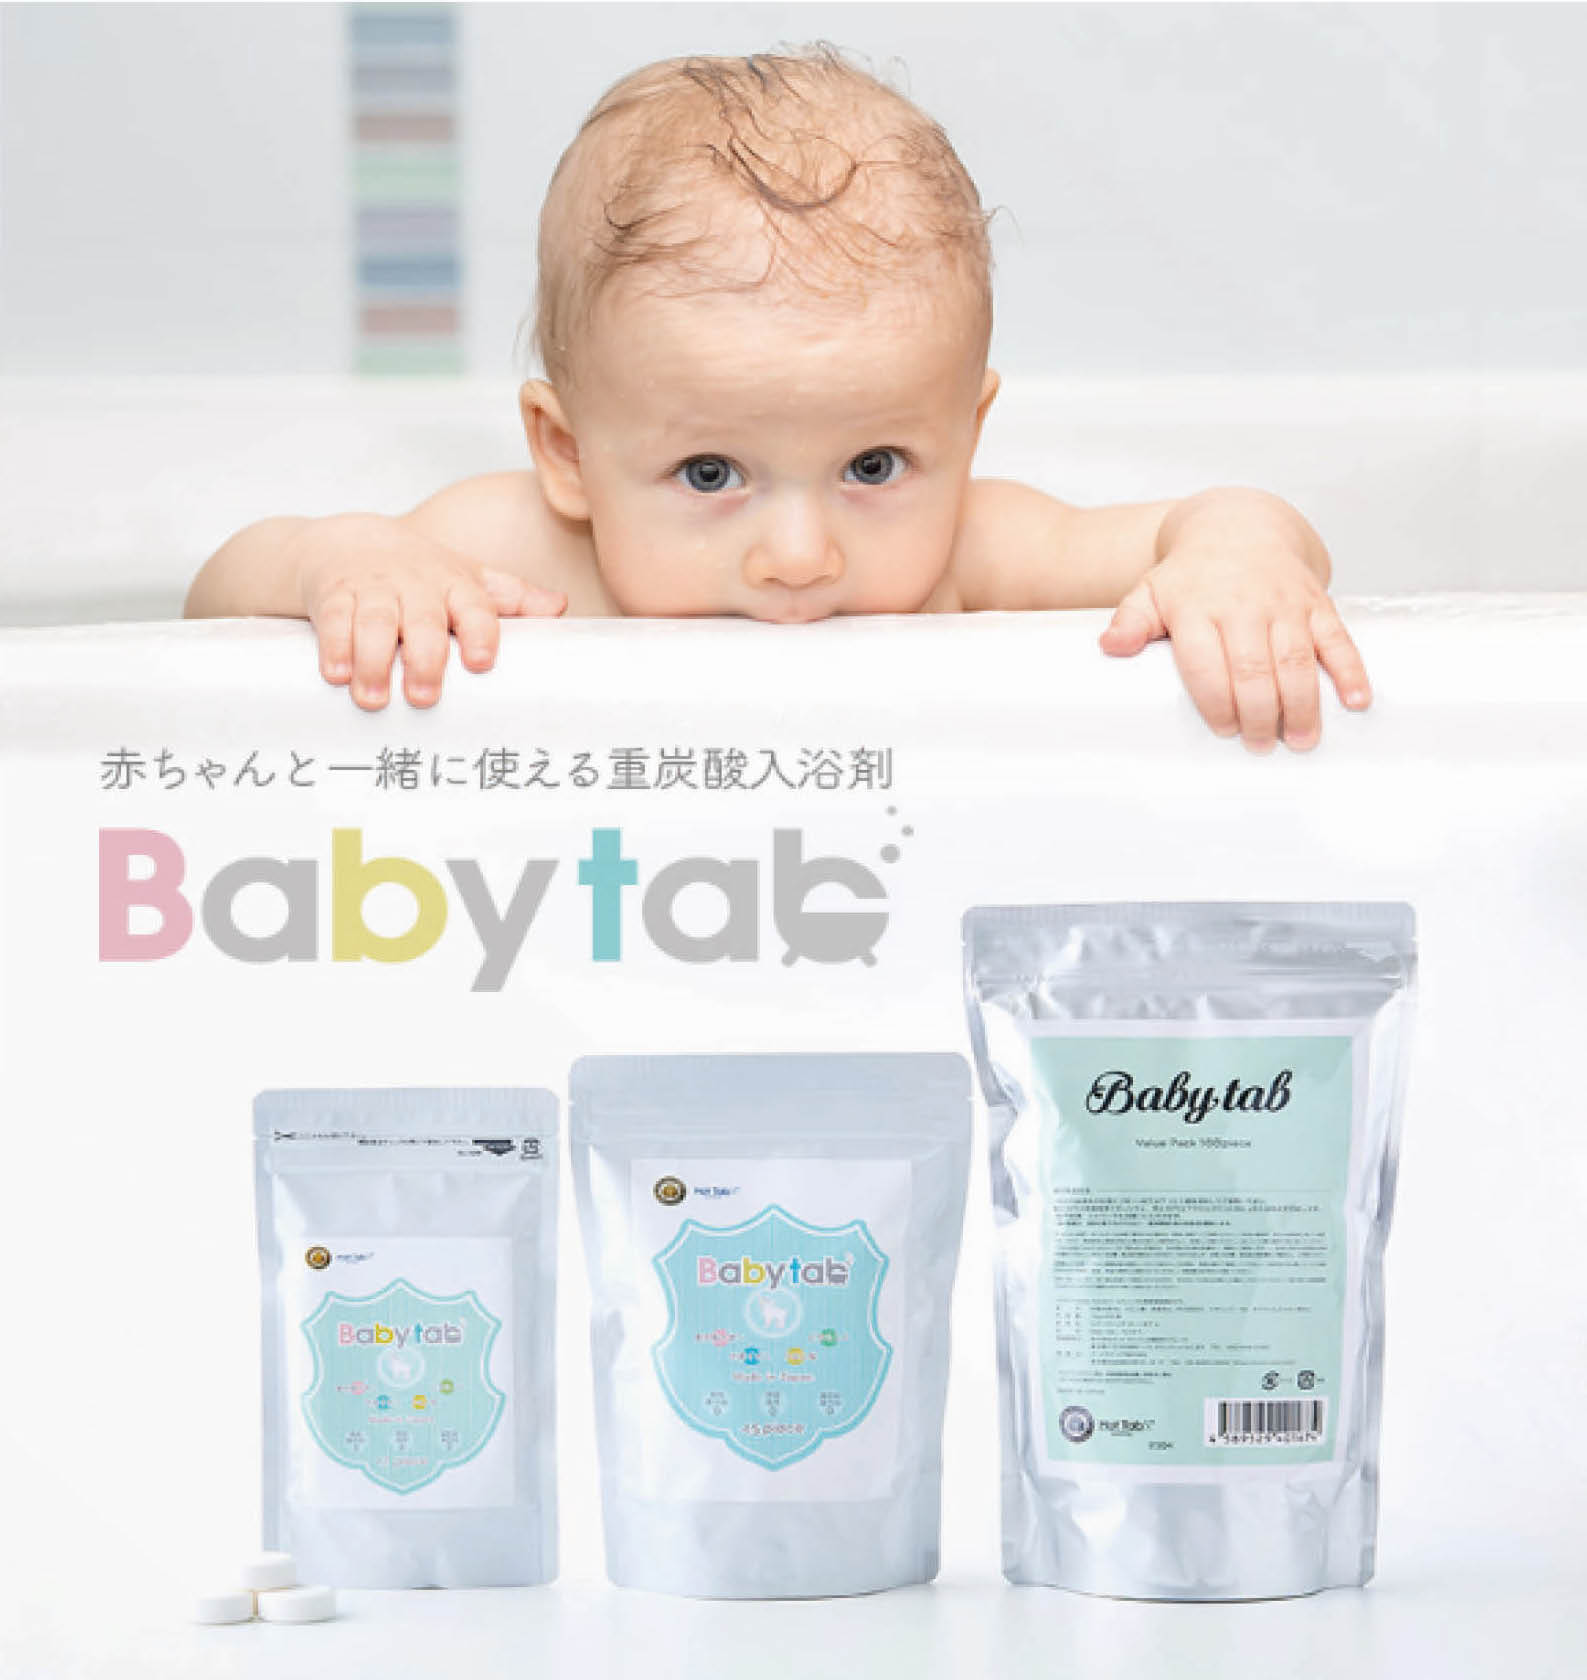 赤ちゃんから一緒に使える無添加の重炭酸入浴剤 Babytab ベビタブ が 第13回ペアレンティングアワード のモノ部門を受賞 Bestunning株式会社のプレスリリース